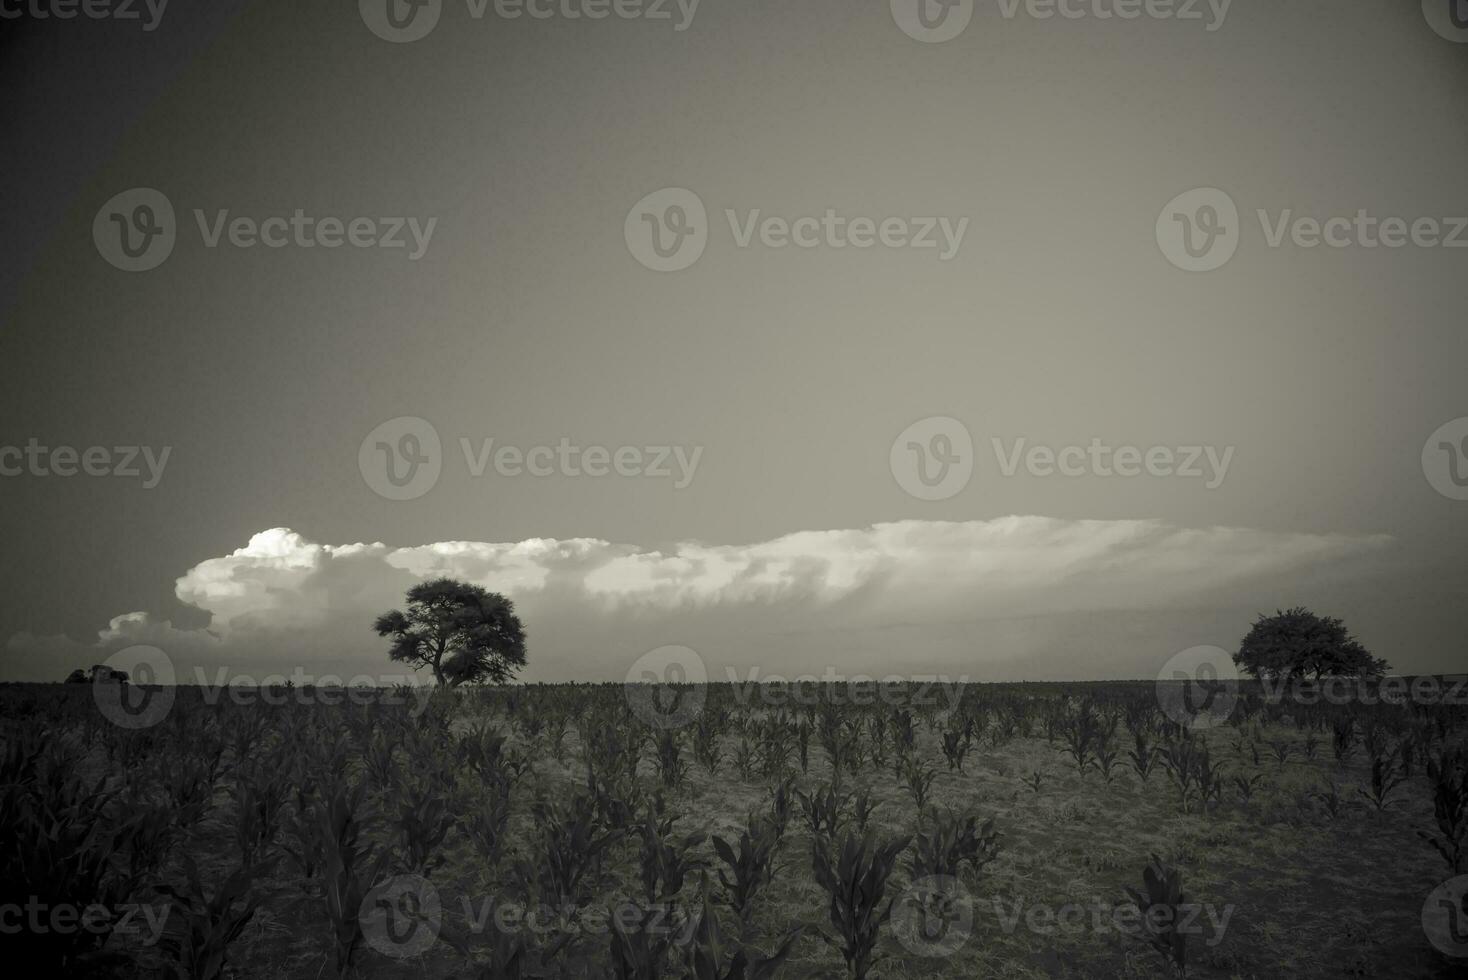 pampas träd landskap på solnedgång, la pampa provins, argentina foto